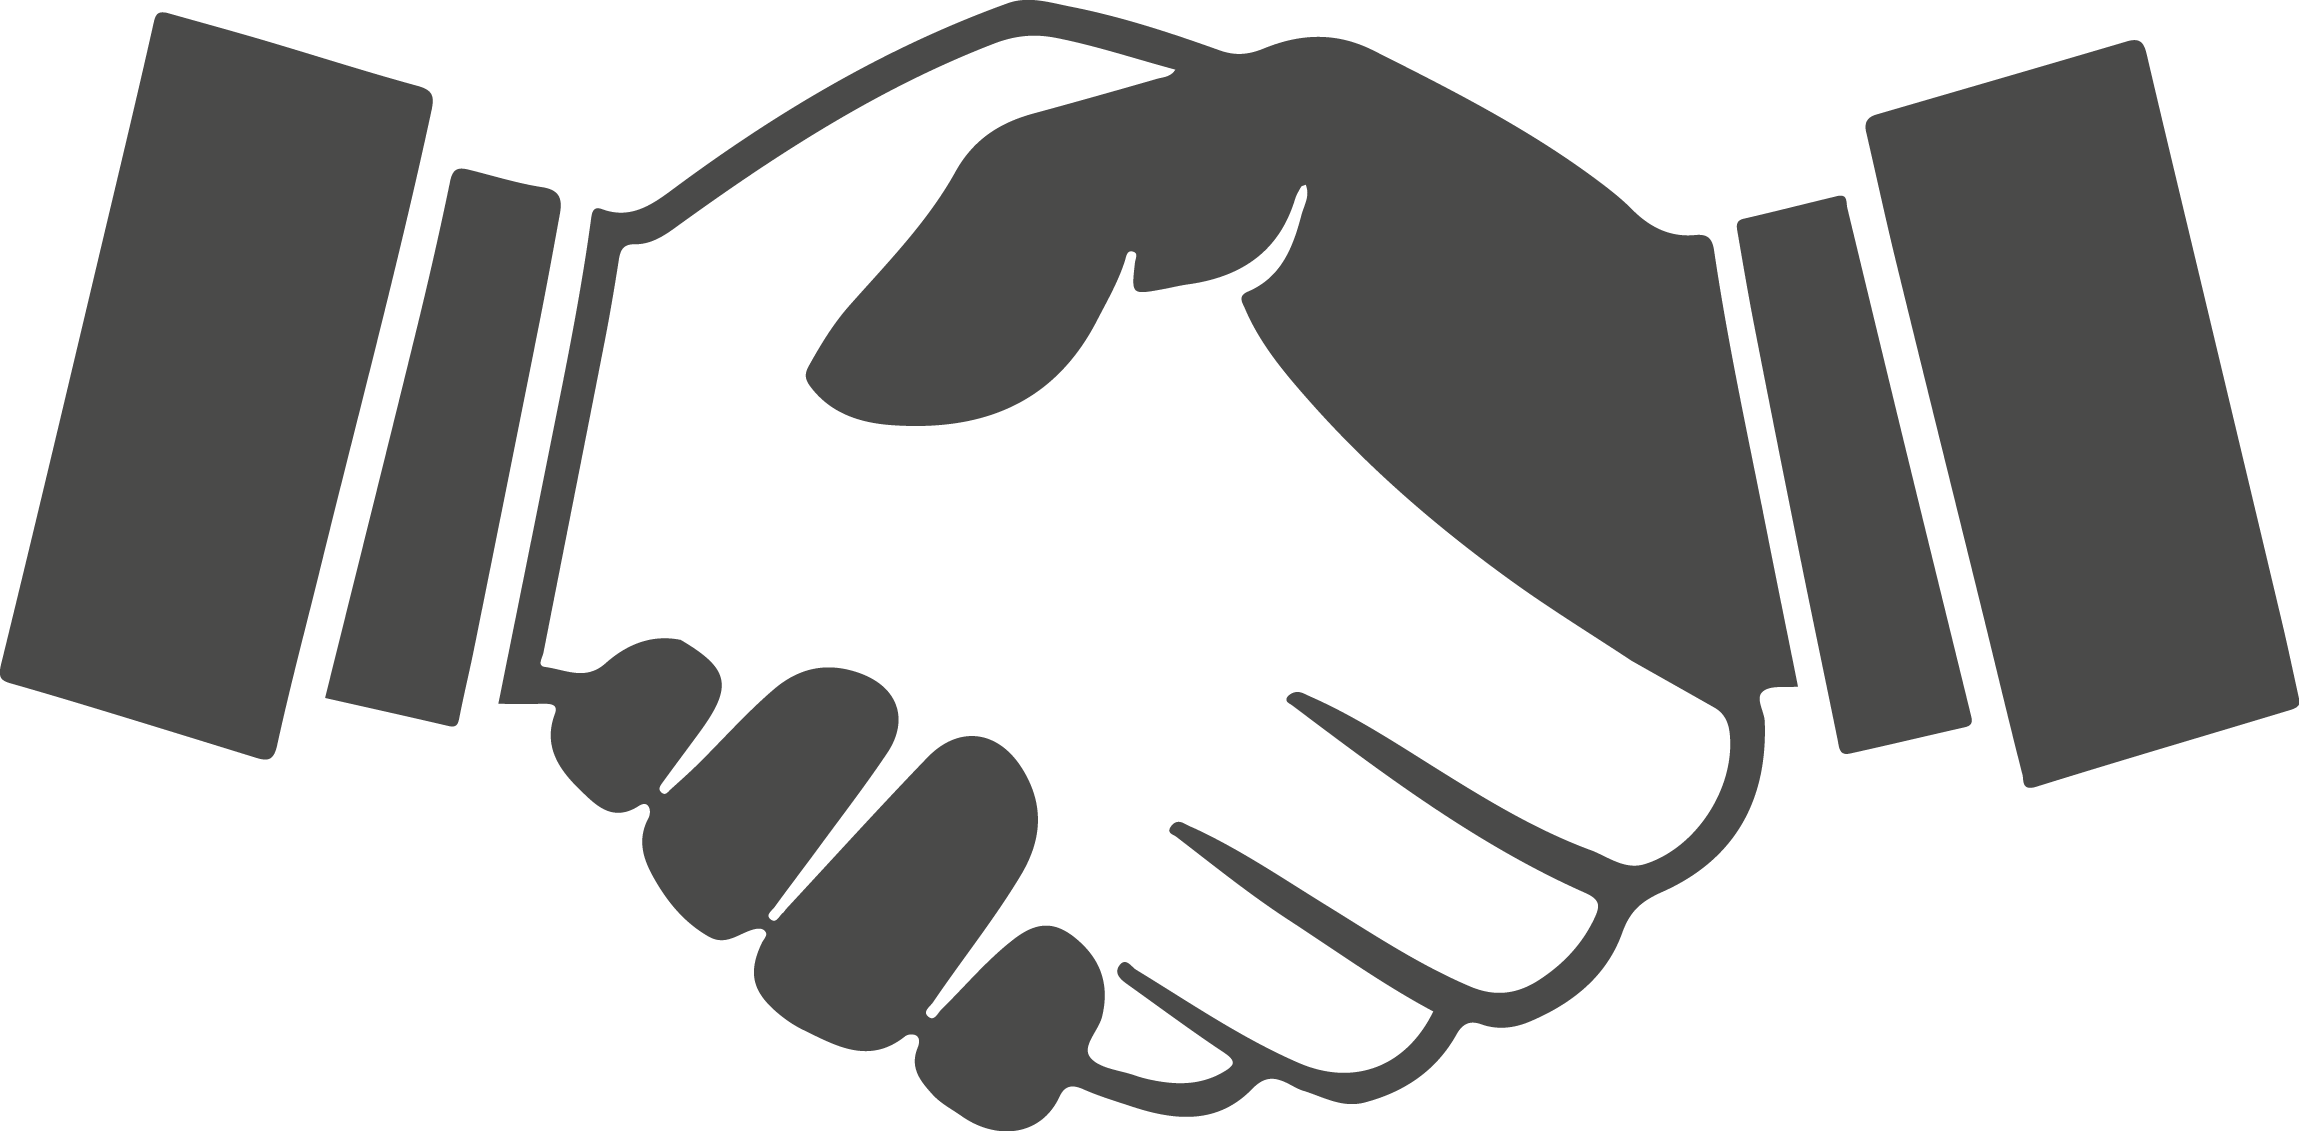 Partnership Hand Shake PNG Free Download